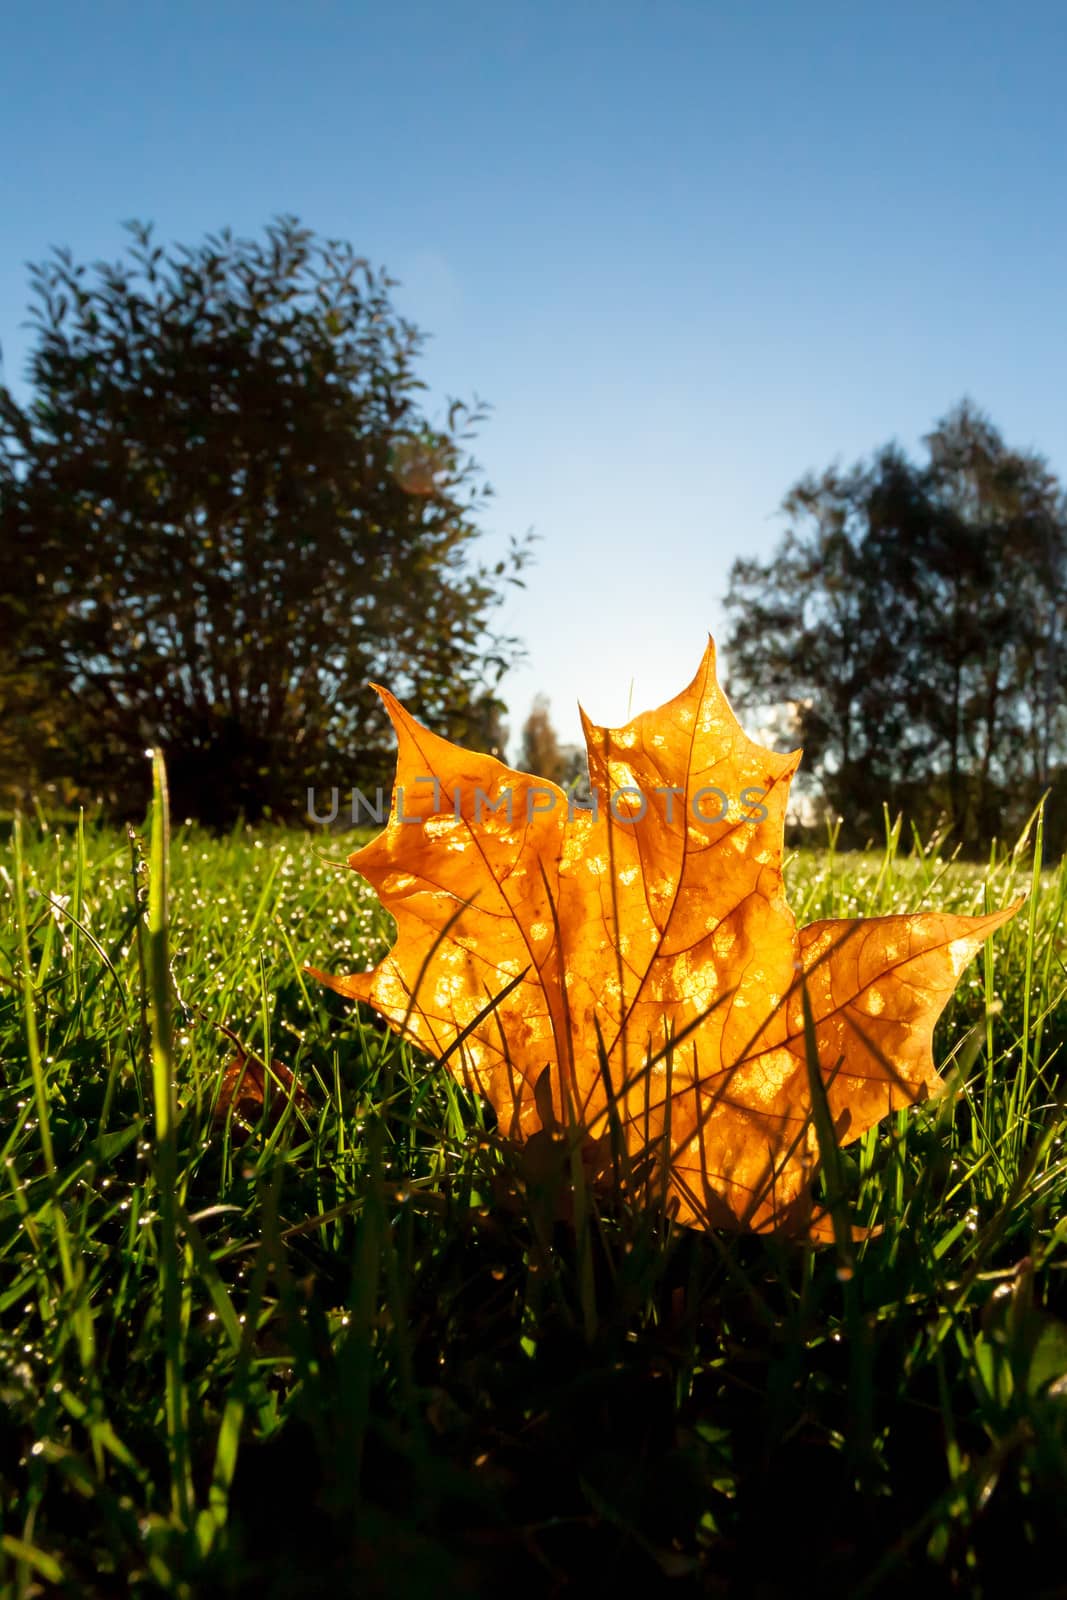 Orange leaf illuminated by backlight of morning sun